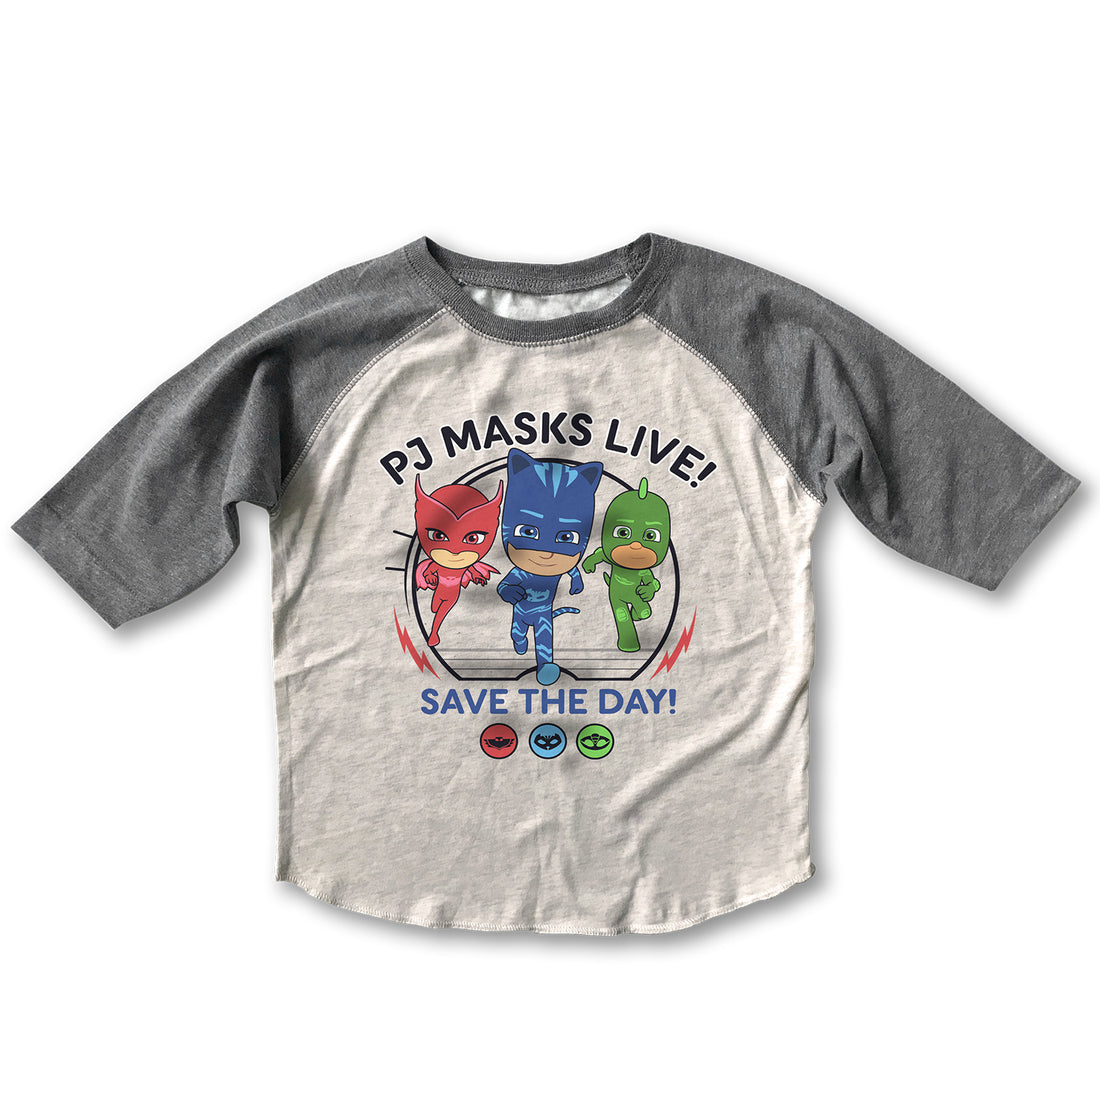 PJ Masks - Save The Day - Retro Raglan Shirt